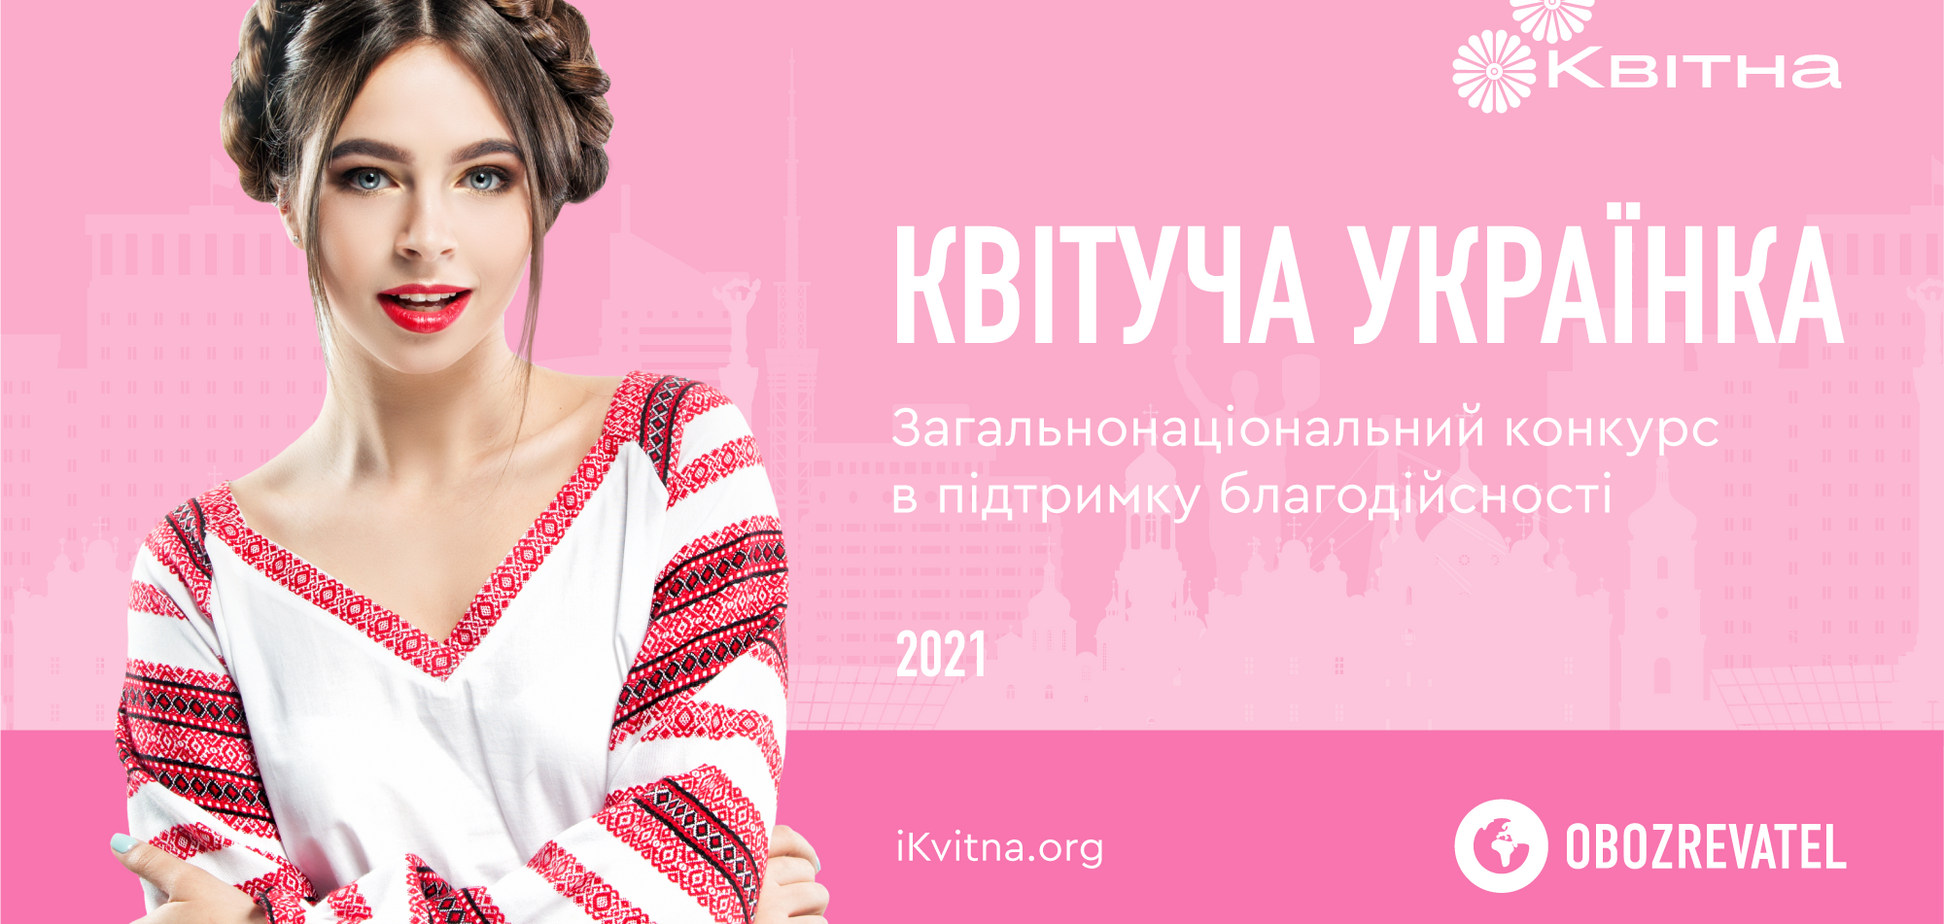 БФ 'Квитна' запустил новый формат конкурсов красоты – принять участие может каждая украинка